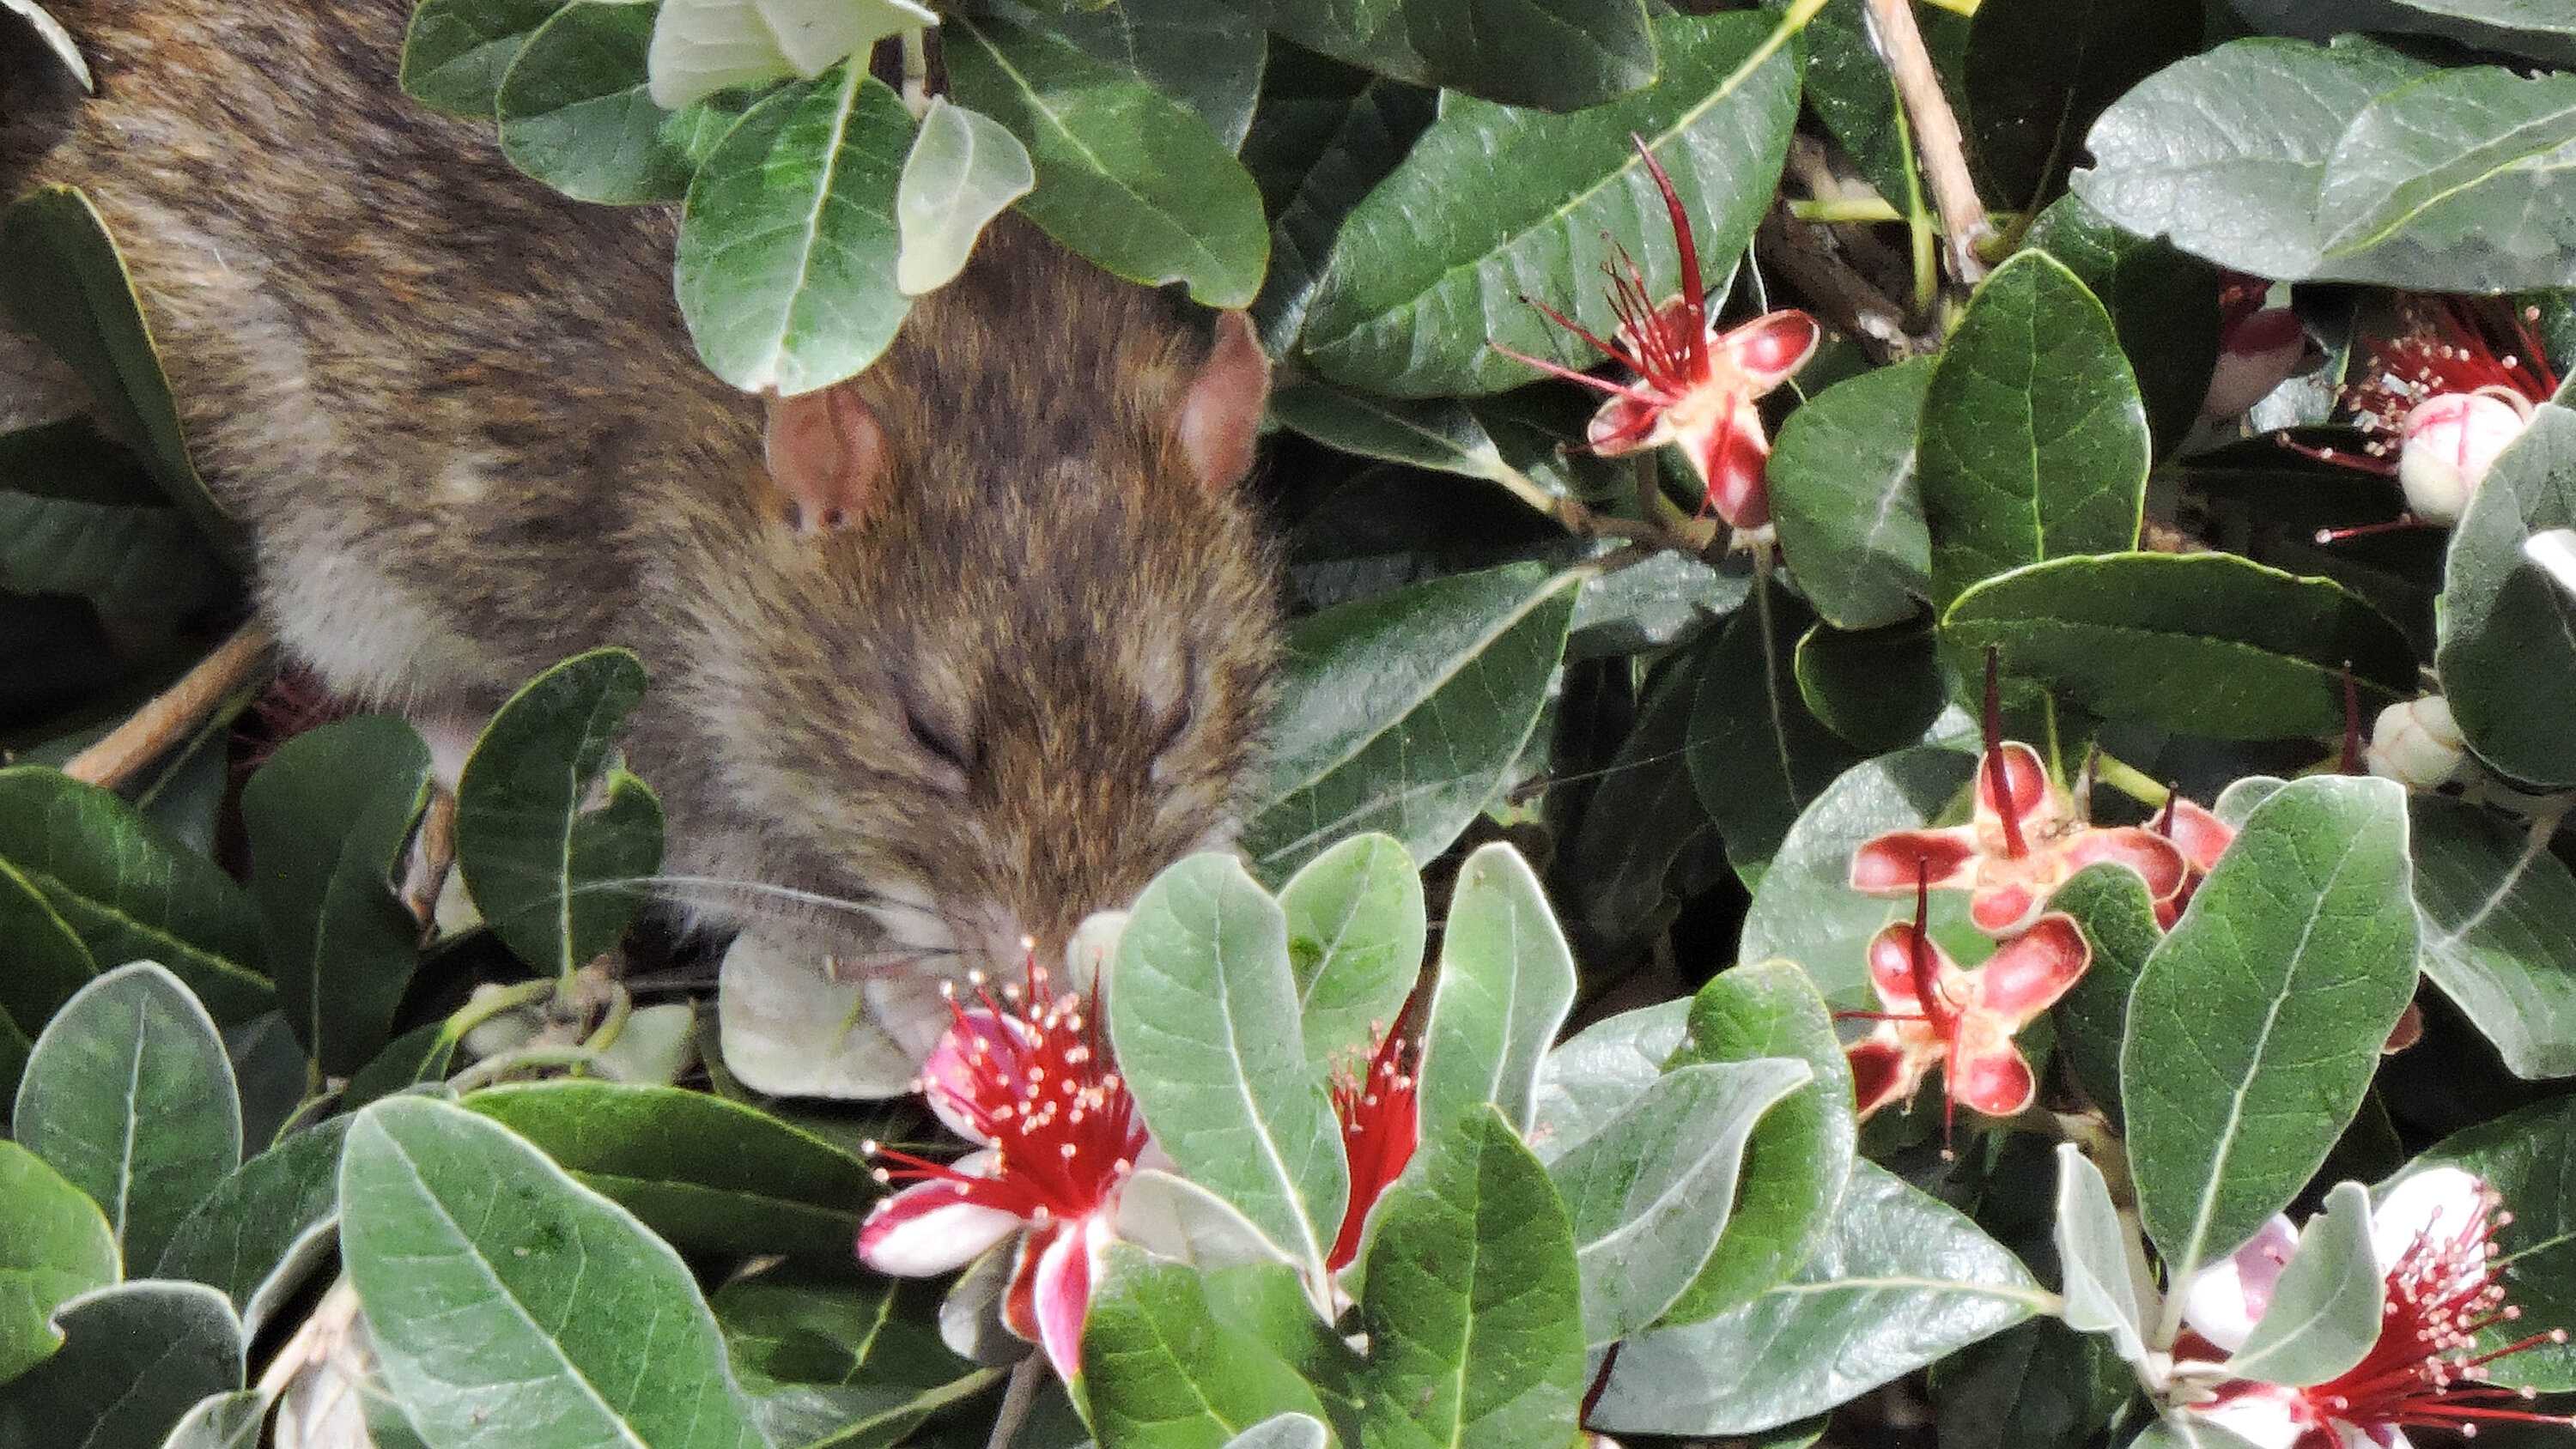 Крысы начали опылять цветки фейхоа